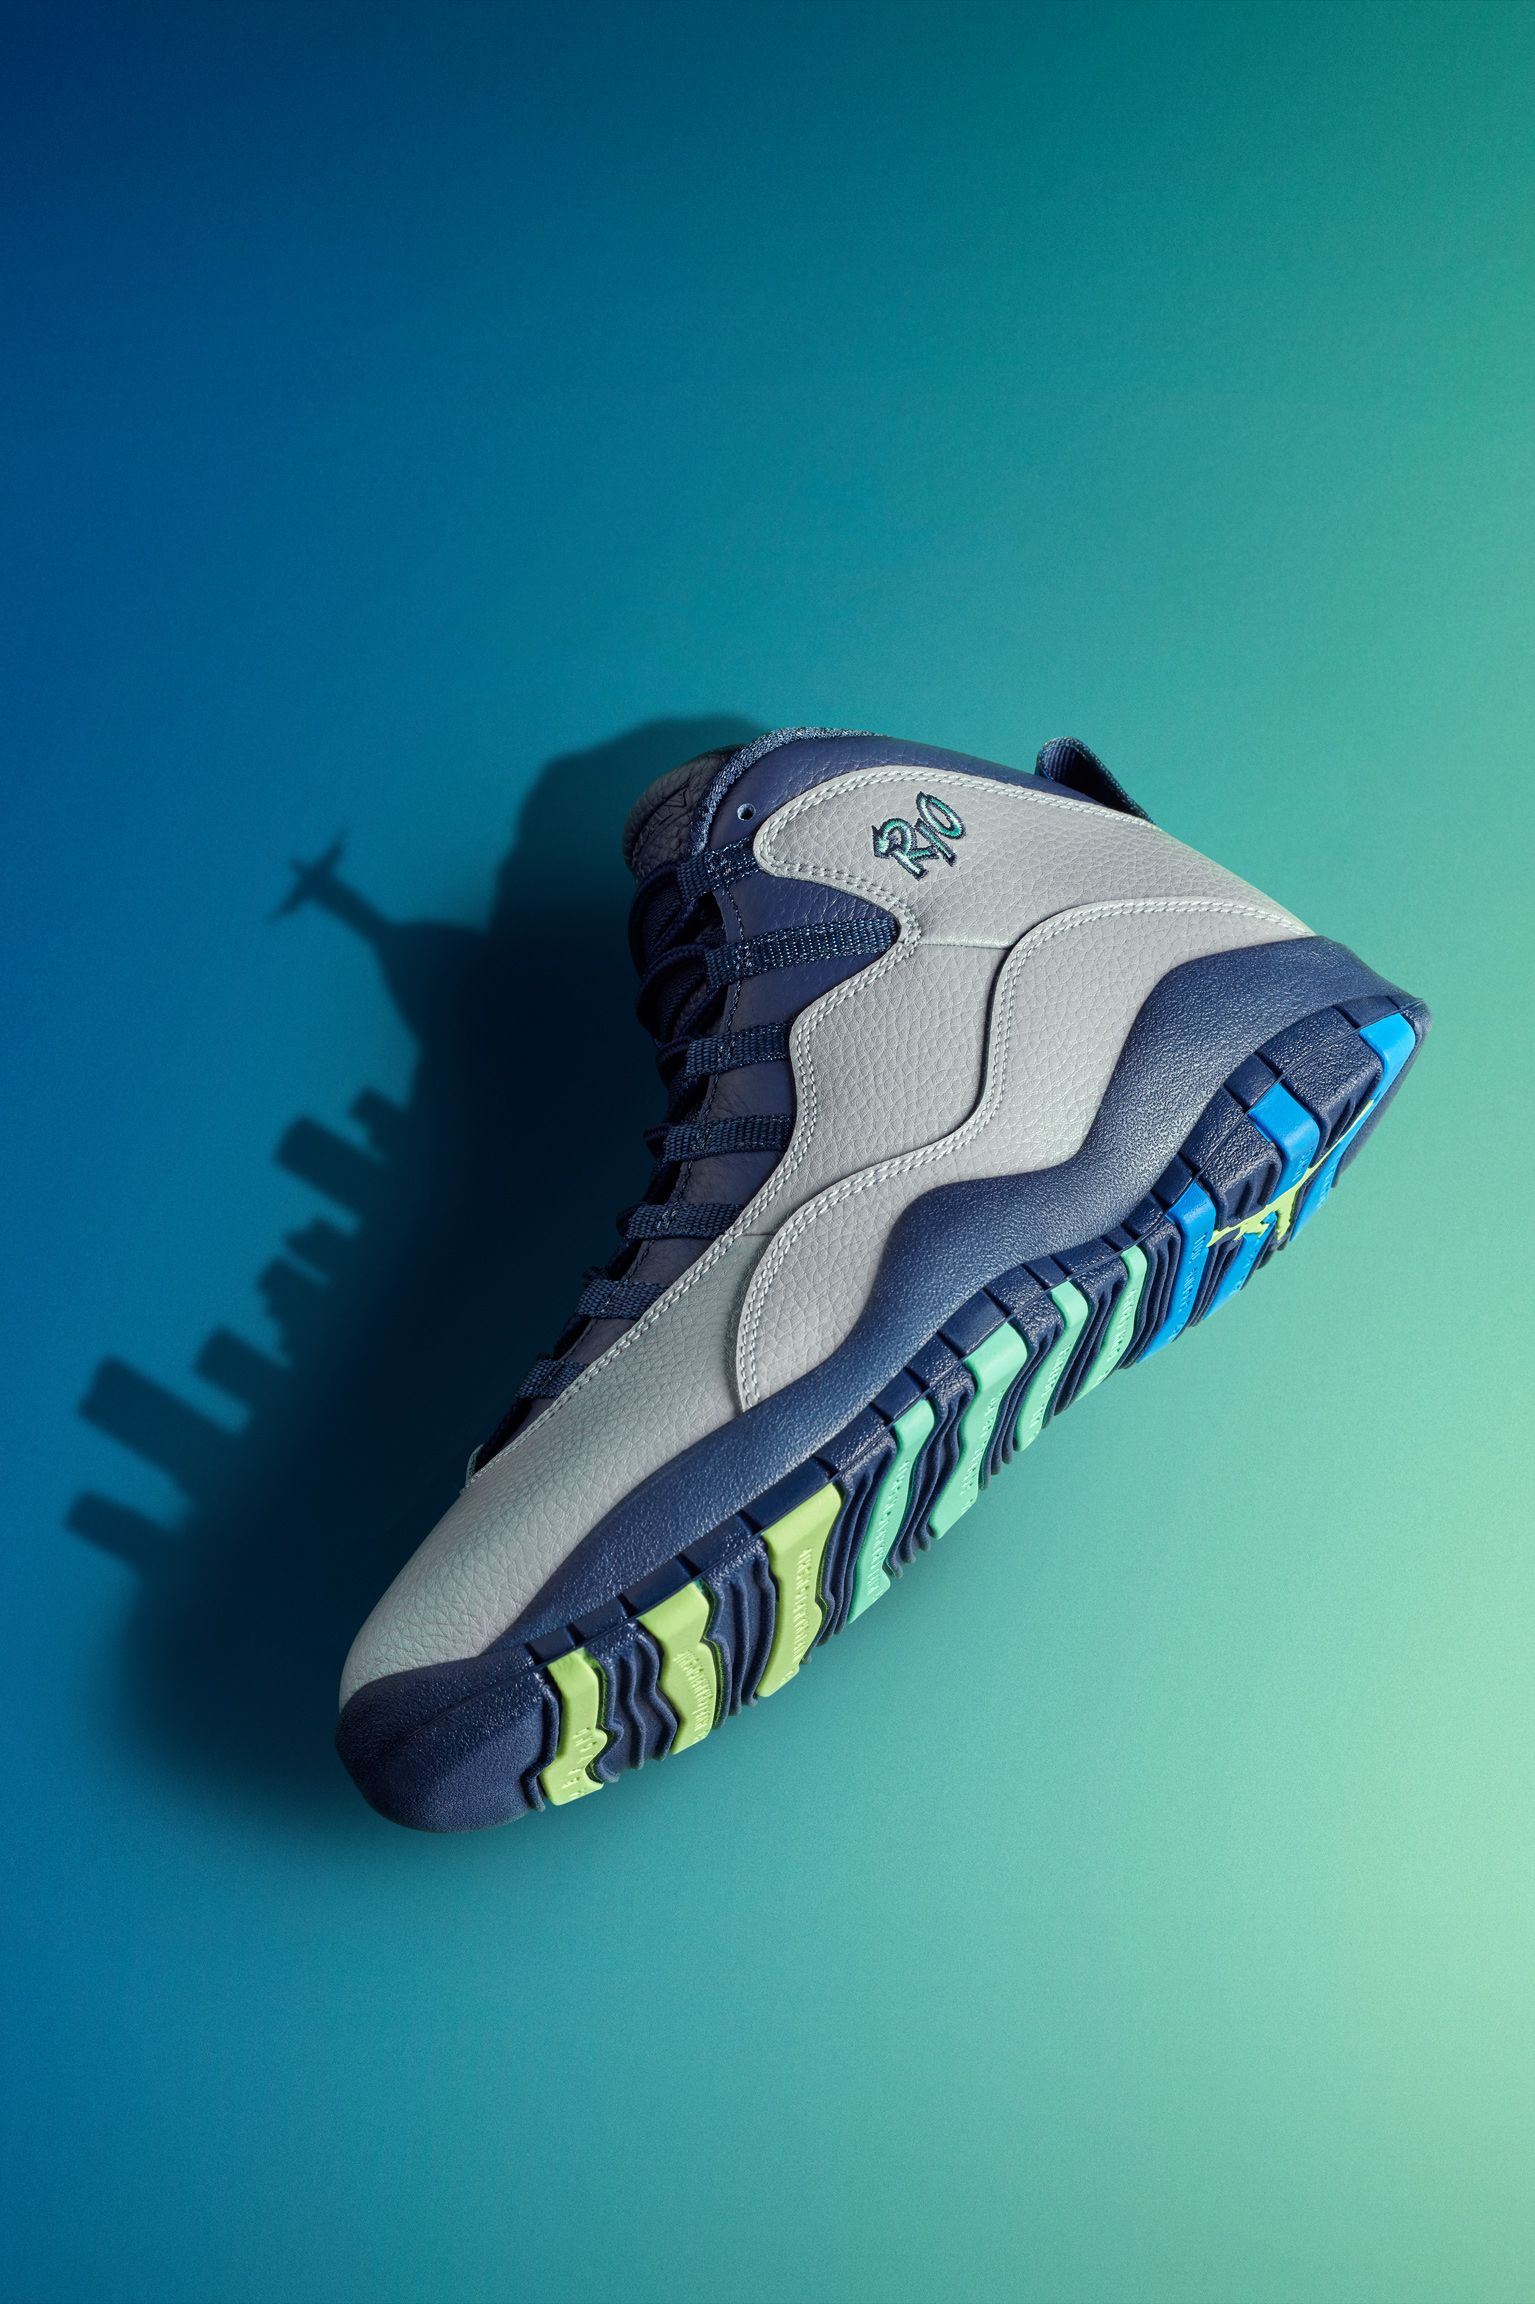 Air Jordan Retro Release Date. Nike SNKRS